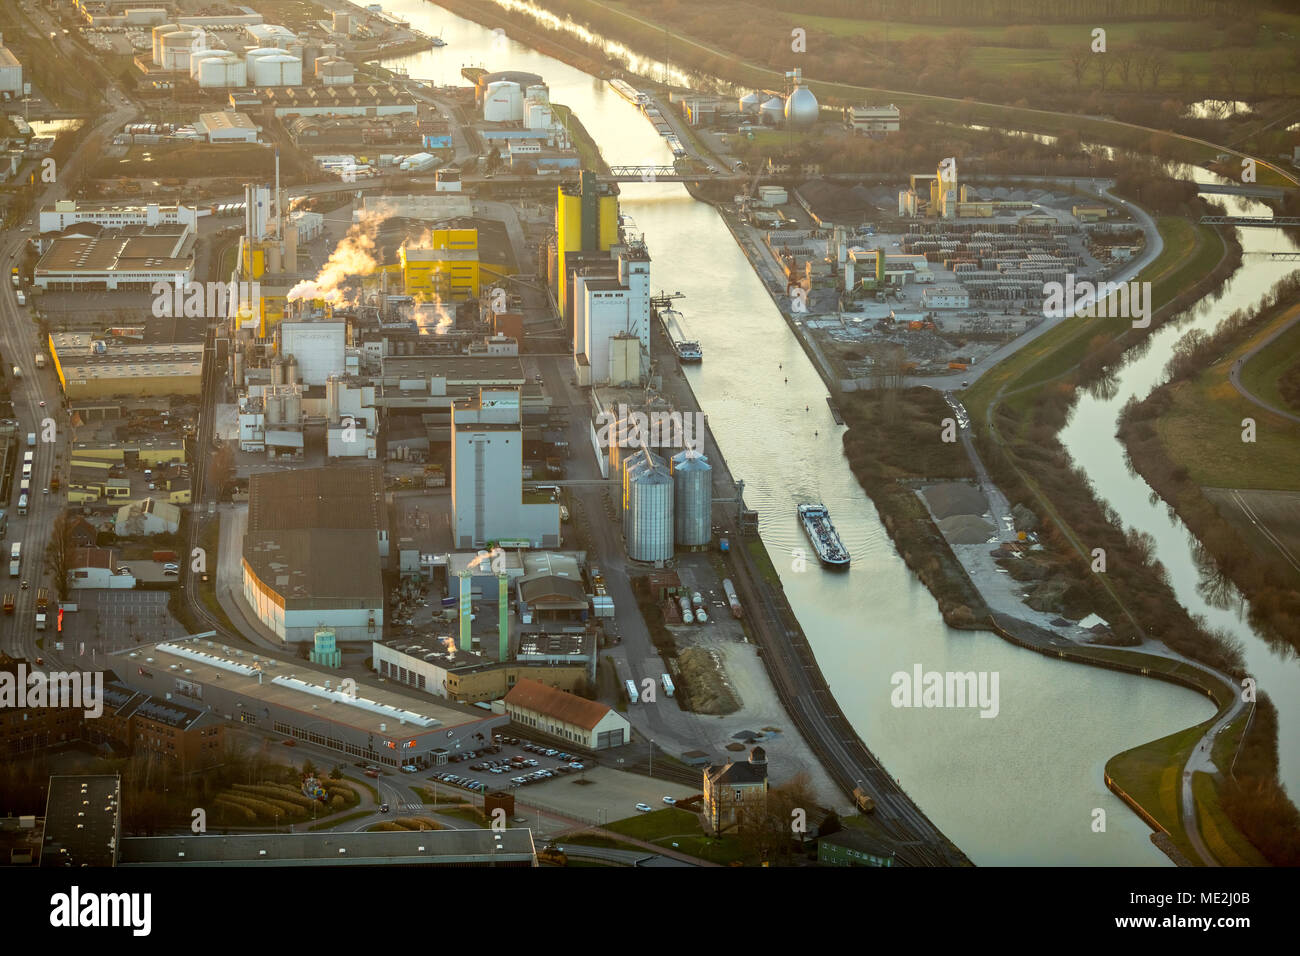 Vista aérea del puerto, Hamm, Molino de aceite, Boelio Brökelmann, Lippe, Canal Datteln-Hamm, Hamm, área de Ruhr, Renania del Norte-Westfalia Foto de stock